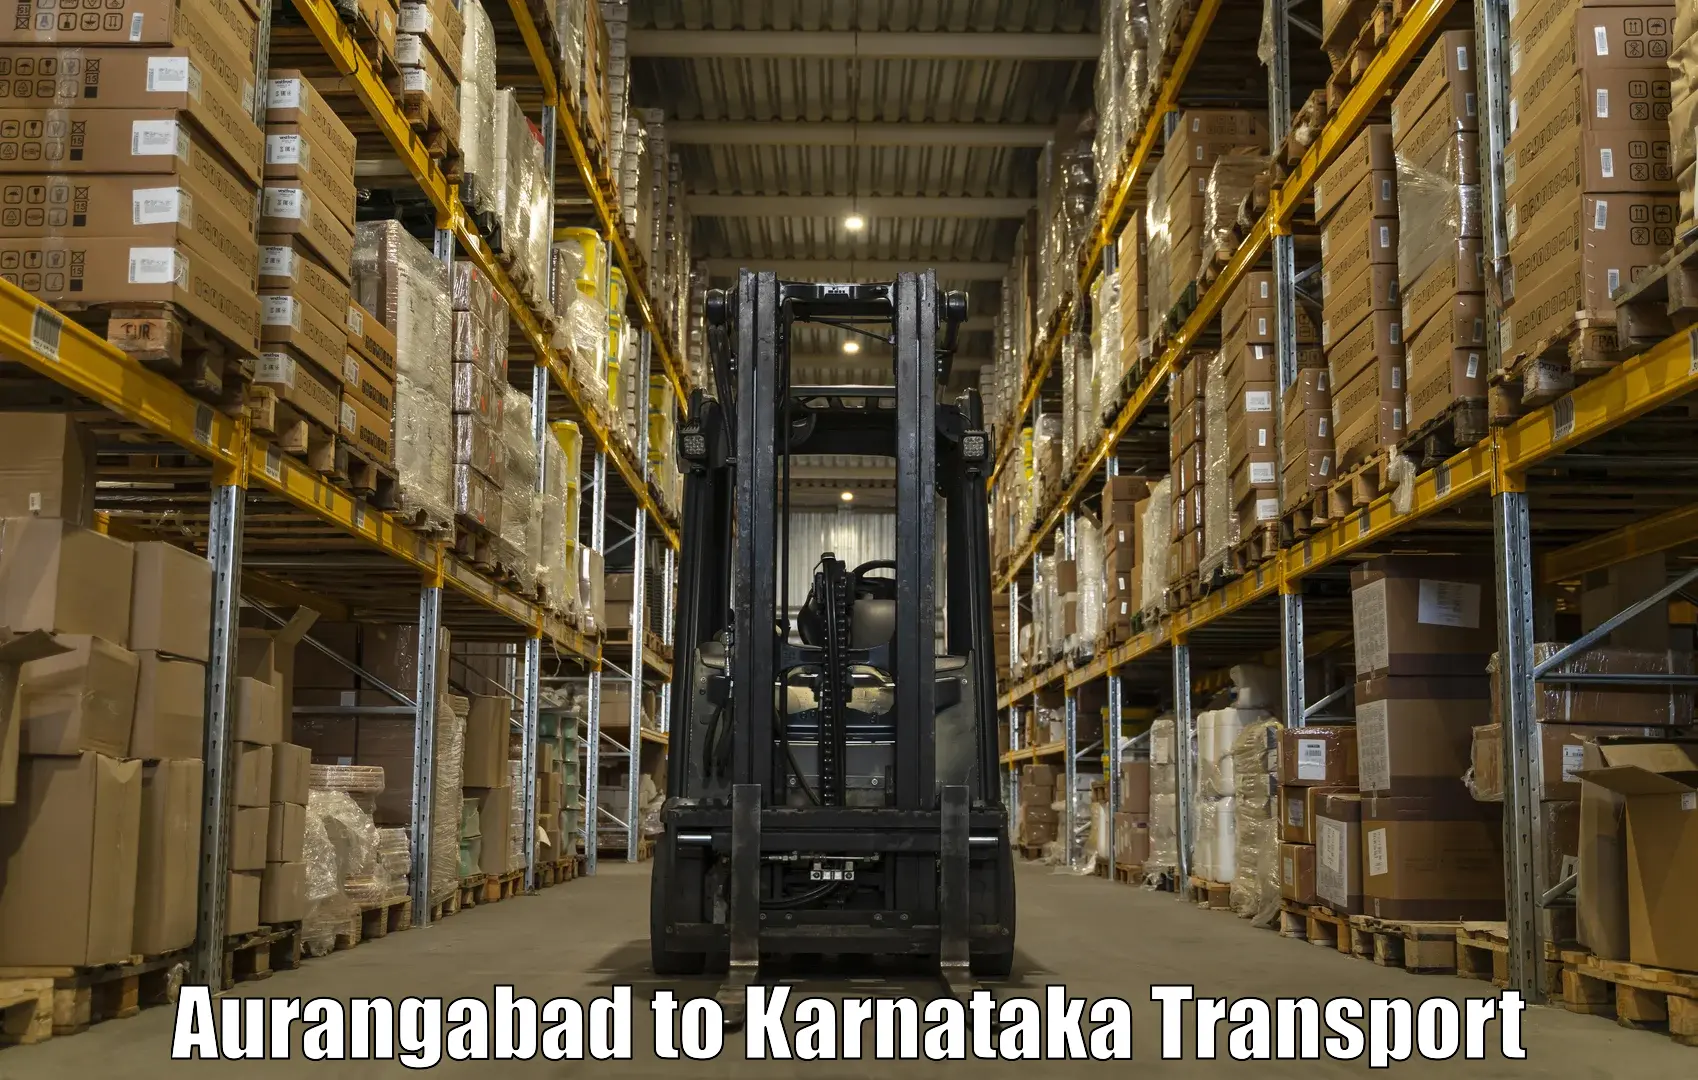 Transport in sharing Aurangabad to Gangavathi